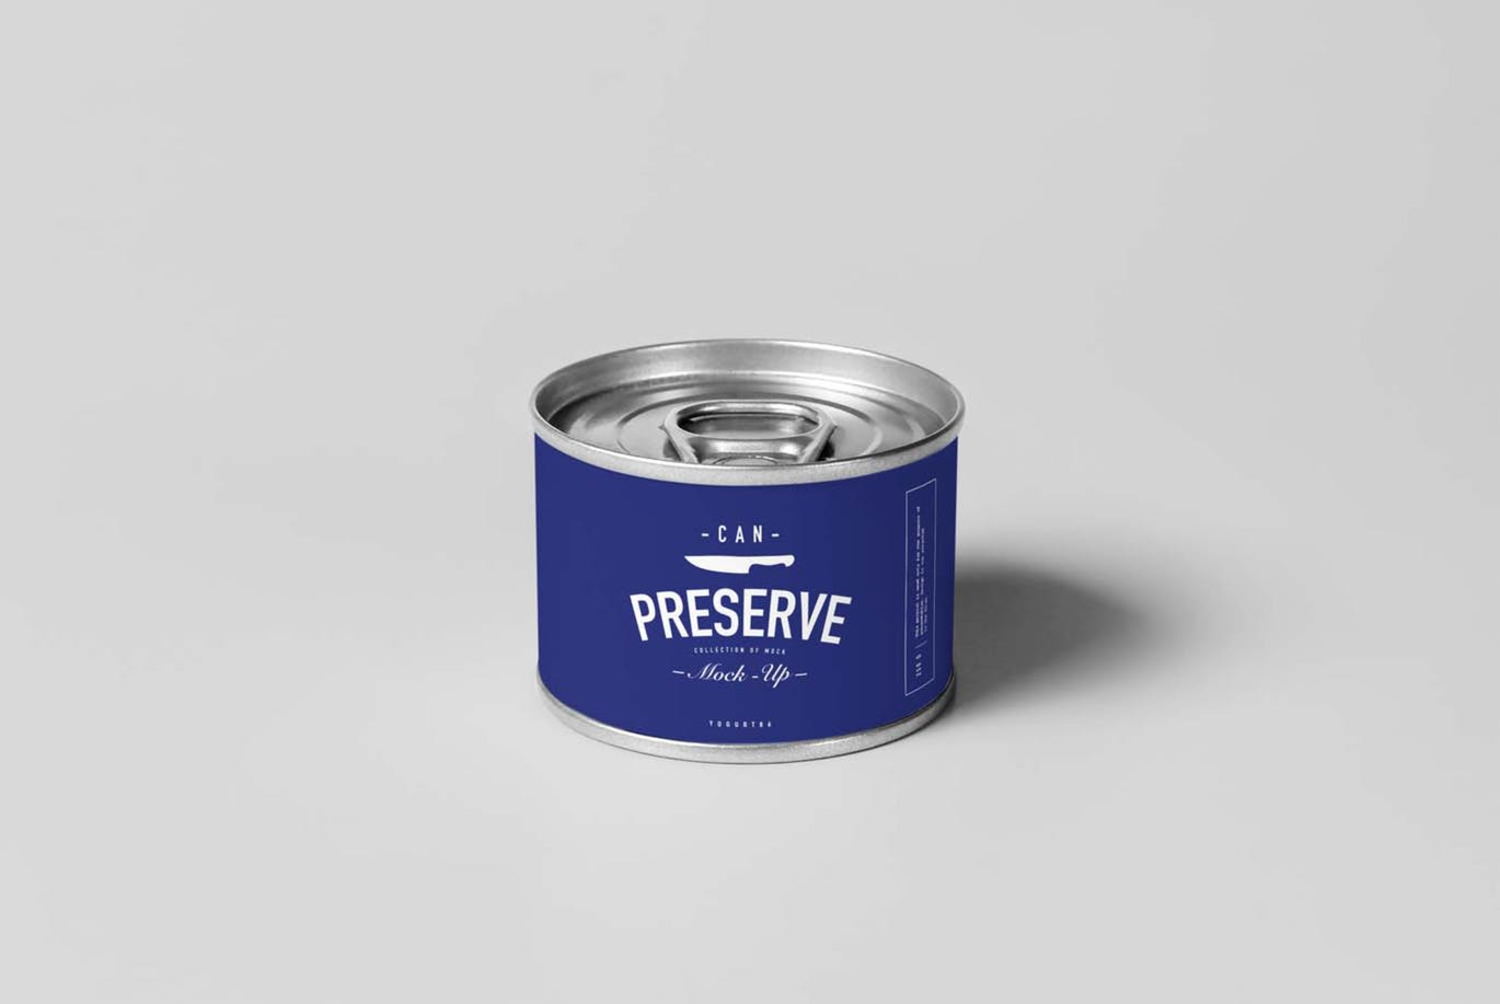 6199 时尚高端的易拉罐罐头包装样机-can-preserve-mock-up